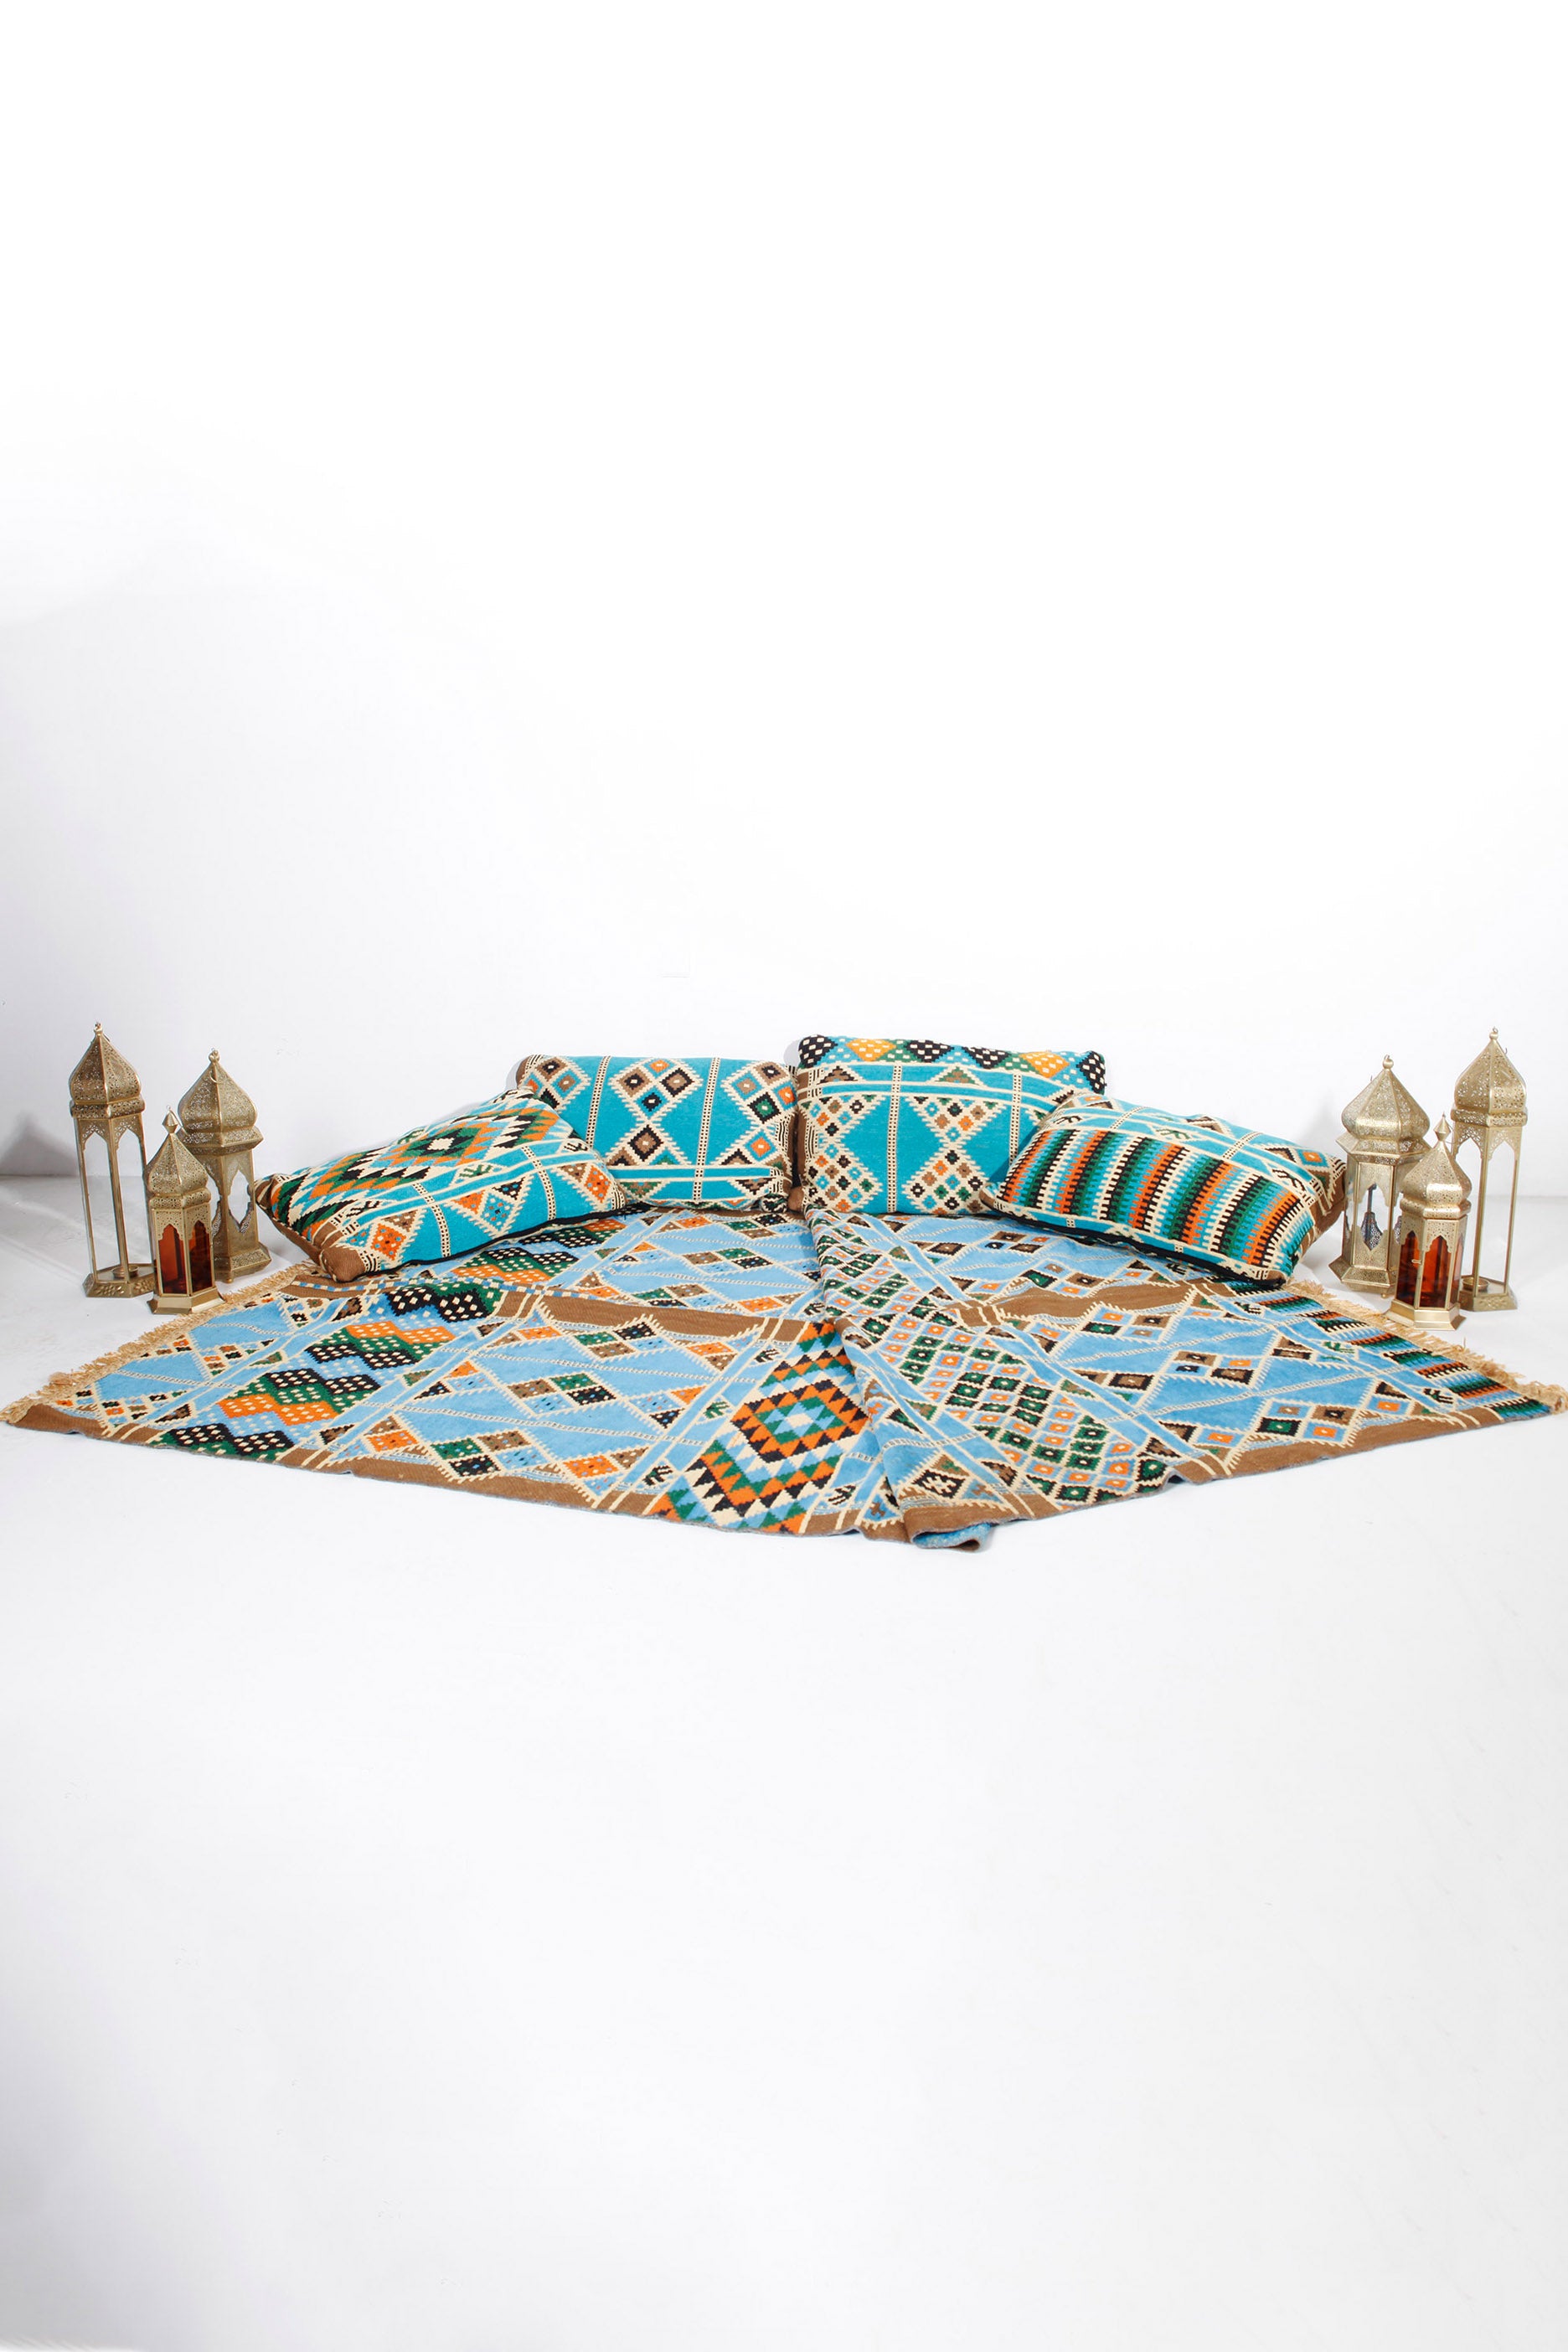 Arabic Majlis Floor Cushion & Carpet Set